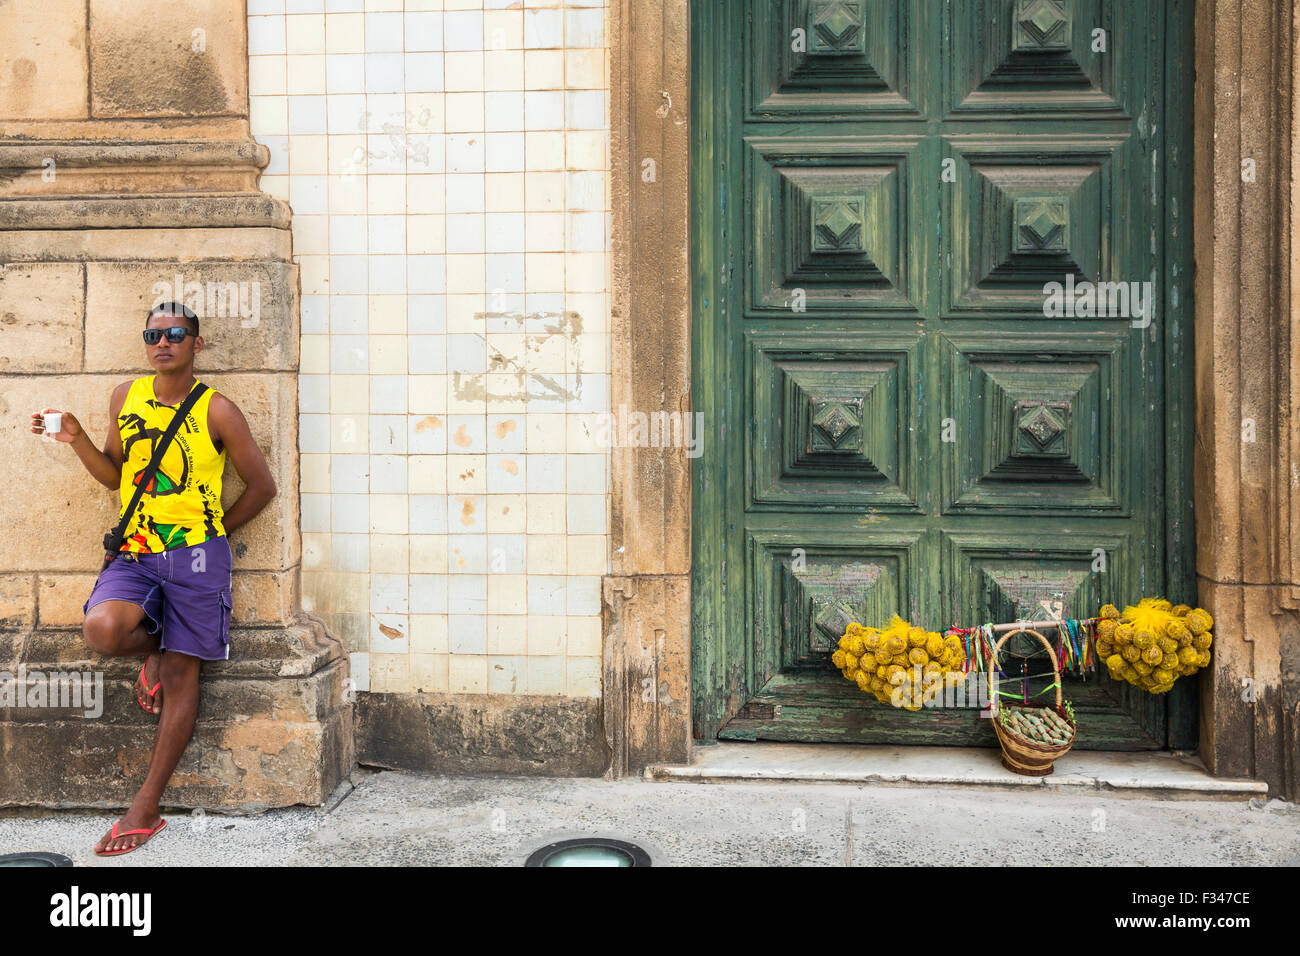 La vita di strada, il centro storico di Salvador de Bahia, Brasile Foto Stock